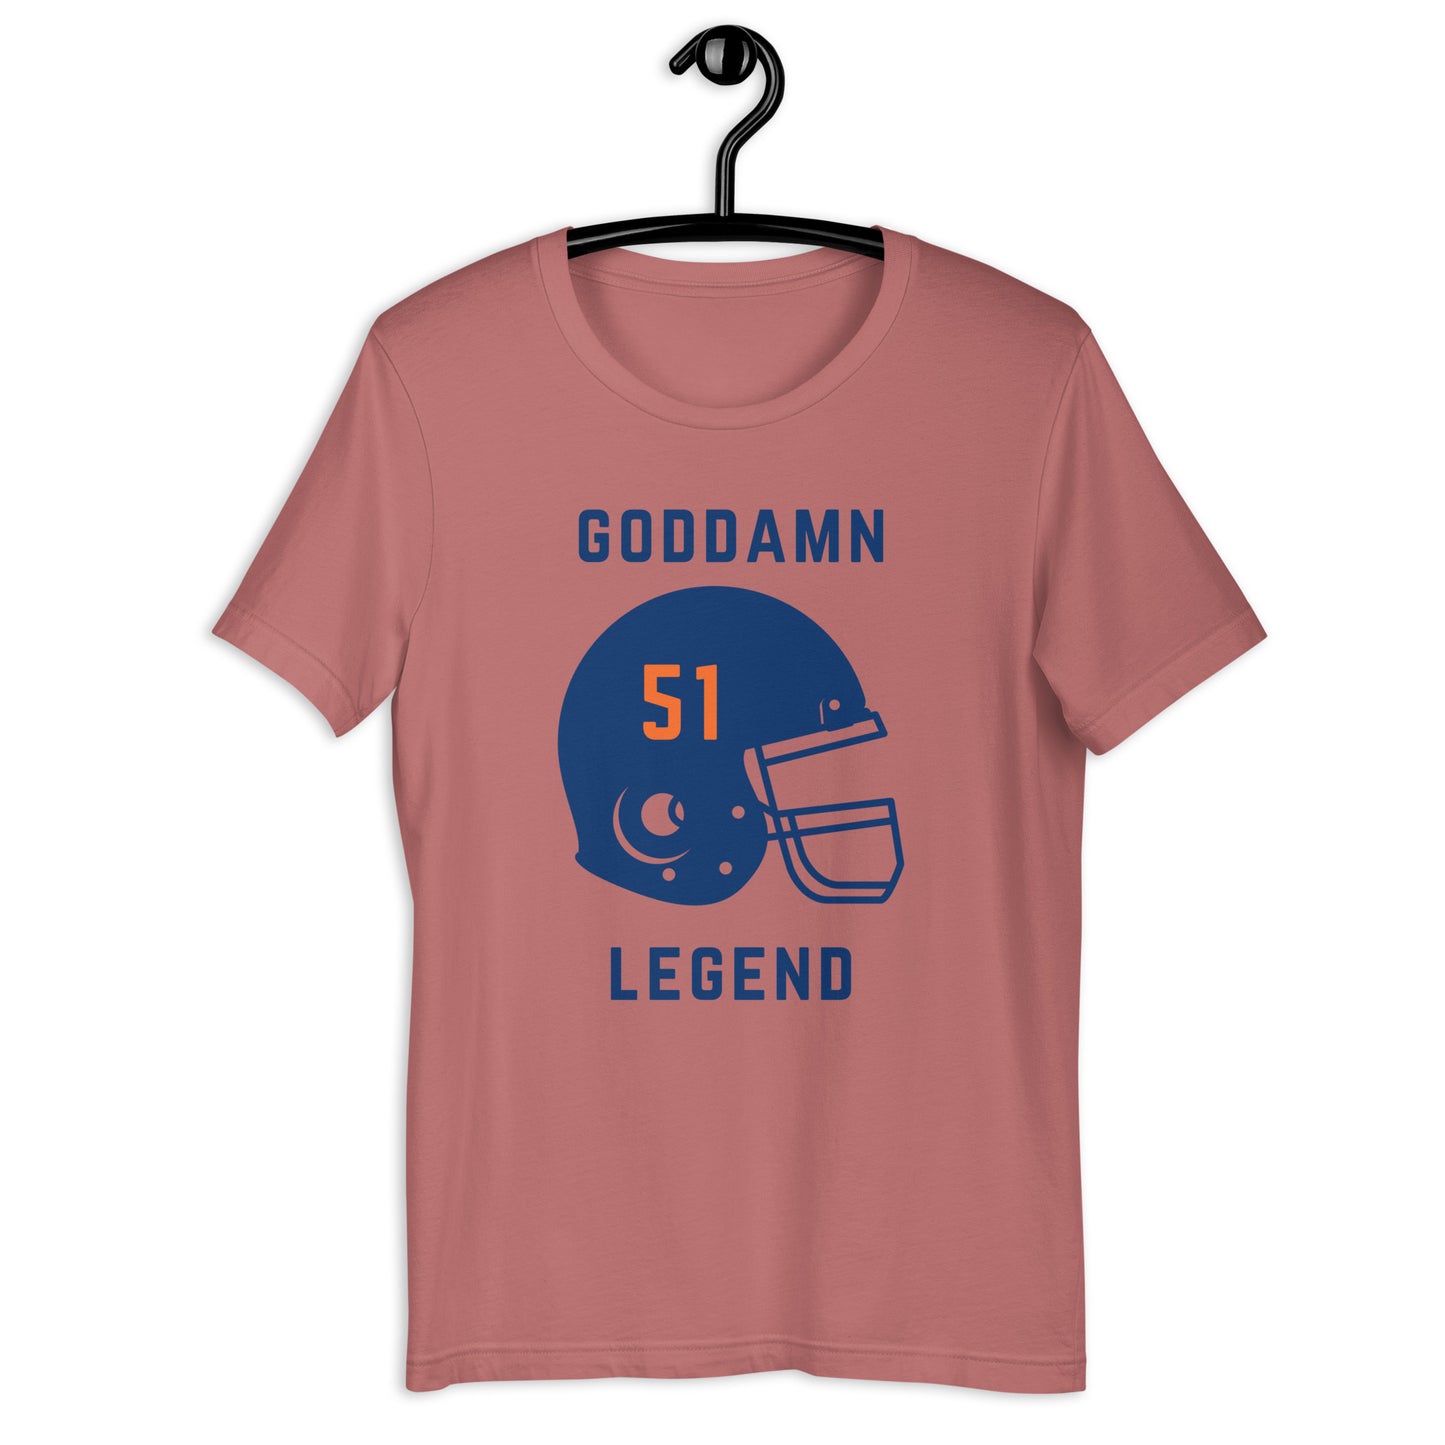 Goddamn Legend #51 TShirt